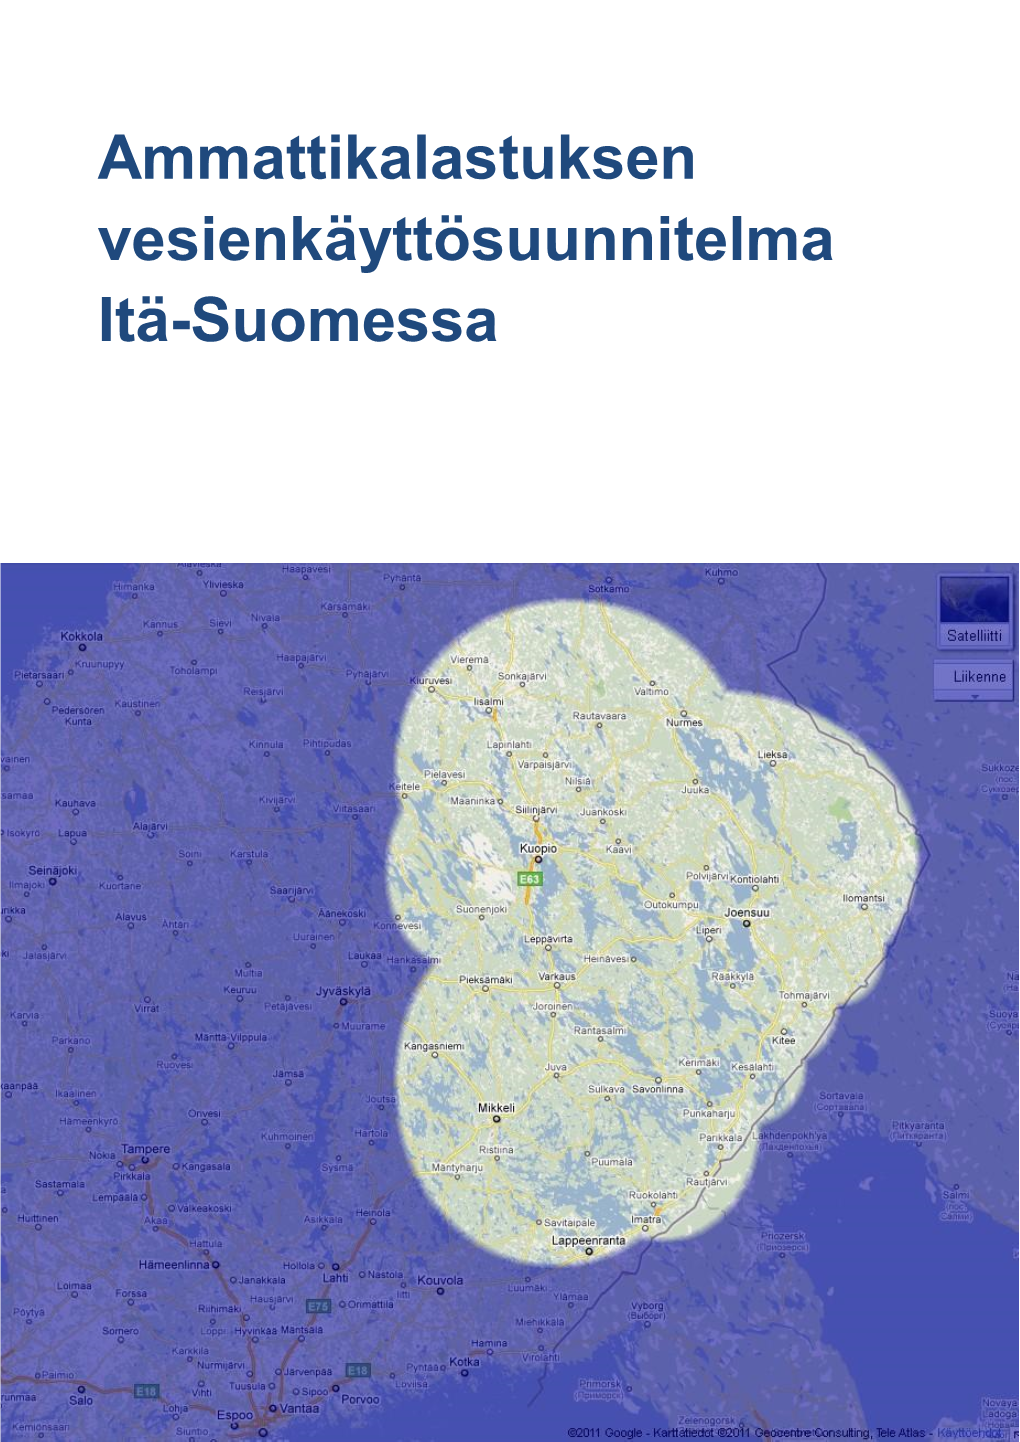 Ammattikalastuksen Vesienkäyttösuunnitelma Itä-Suomessa